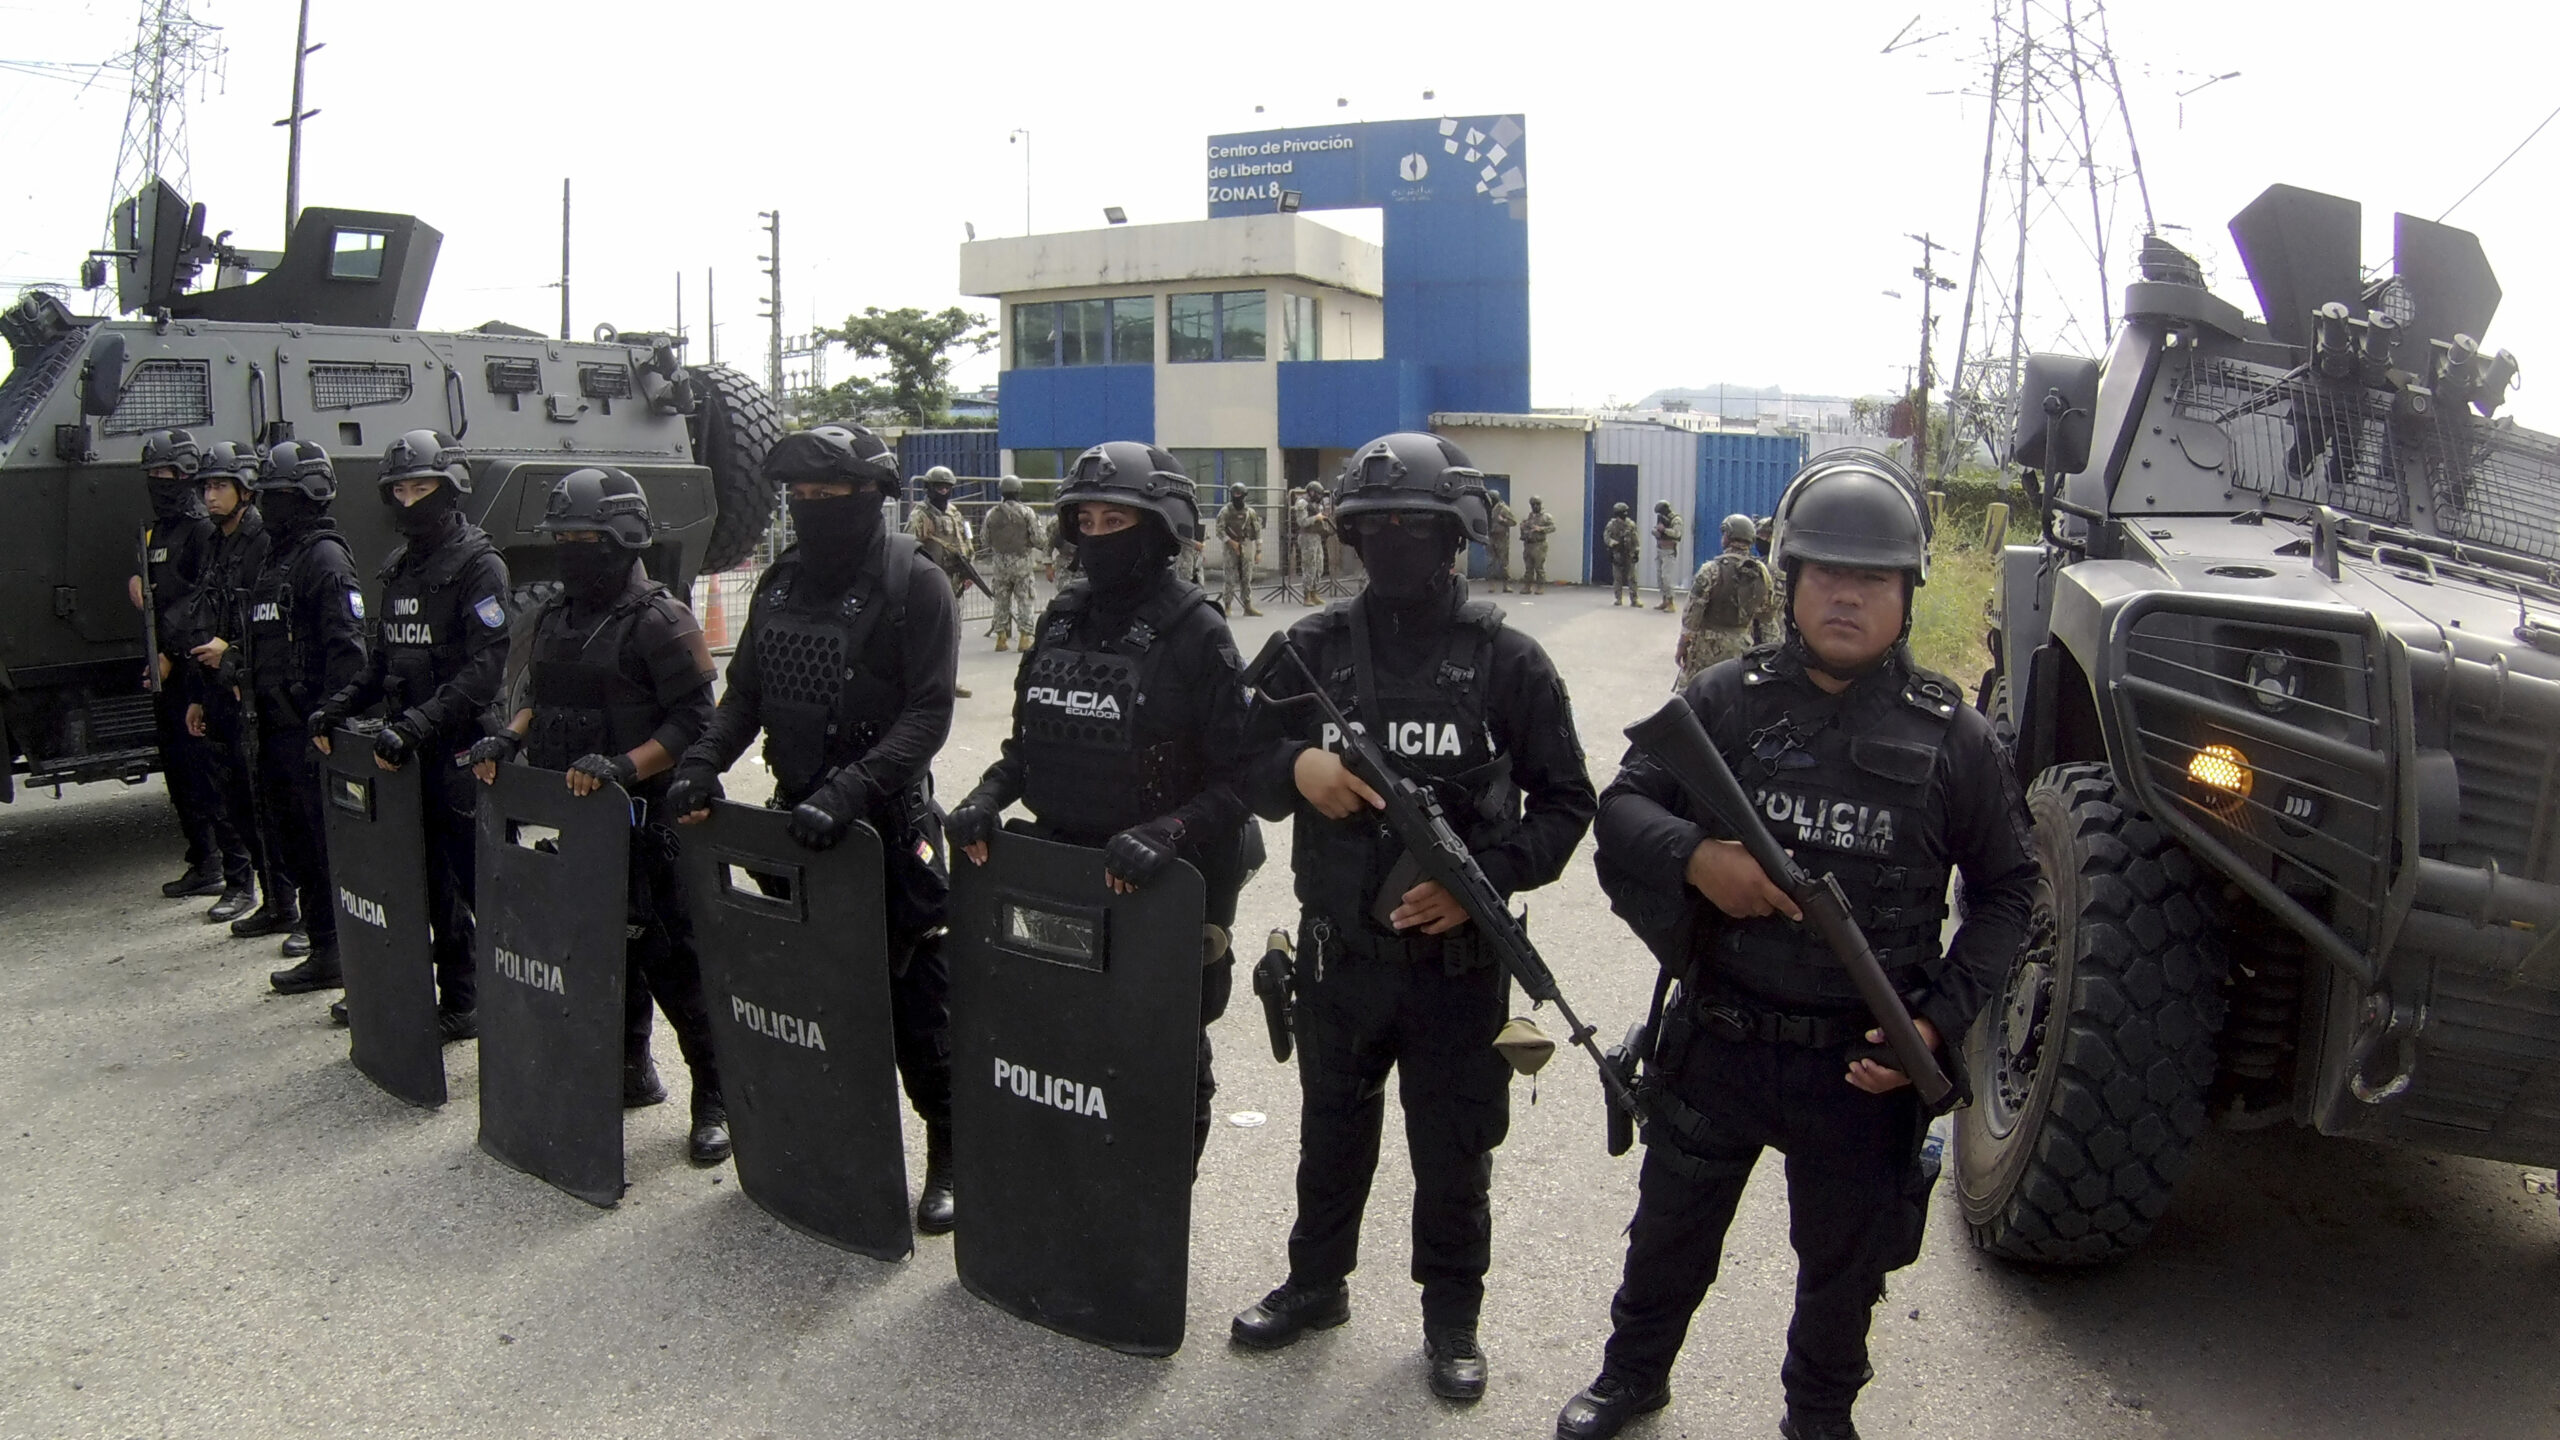 Int'l leaders condemn Ecuador after cops break into Mexican Embassy